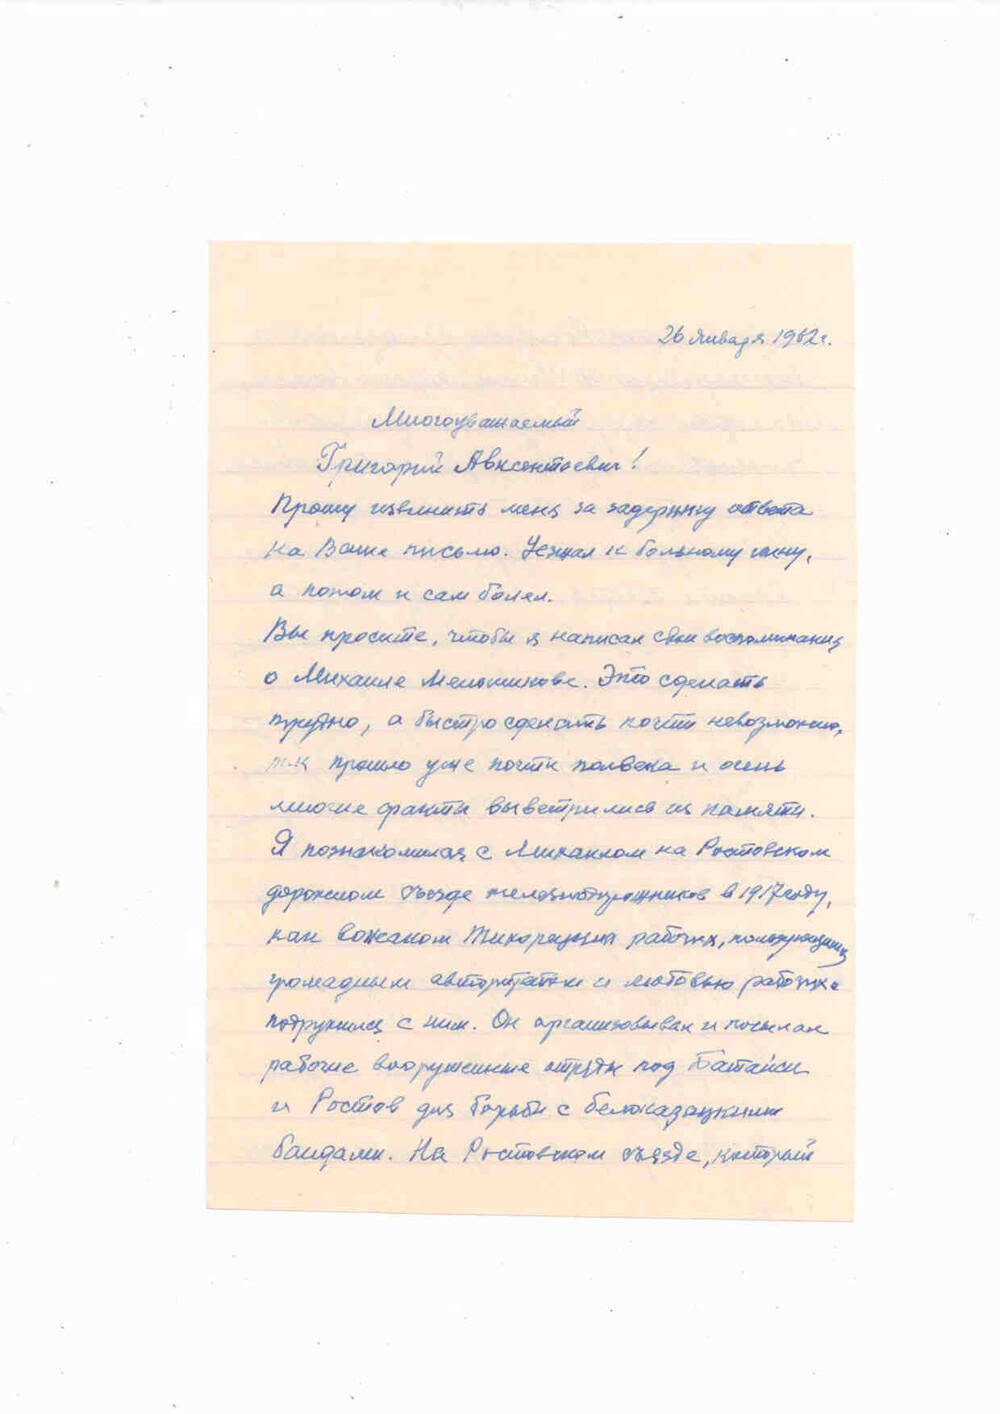 Письмо Дзекуну Г.А. от Рассола. 26 января 1962 г.